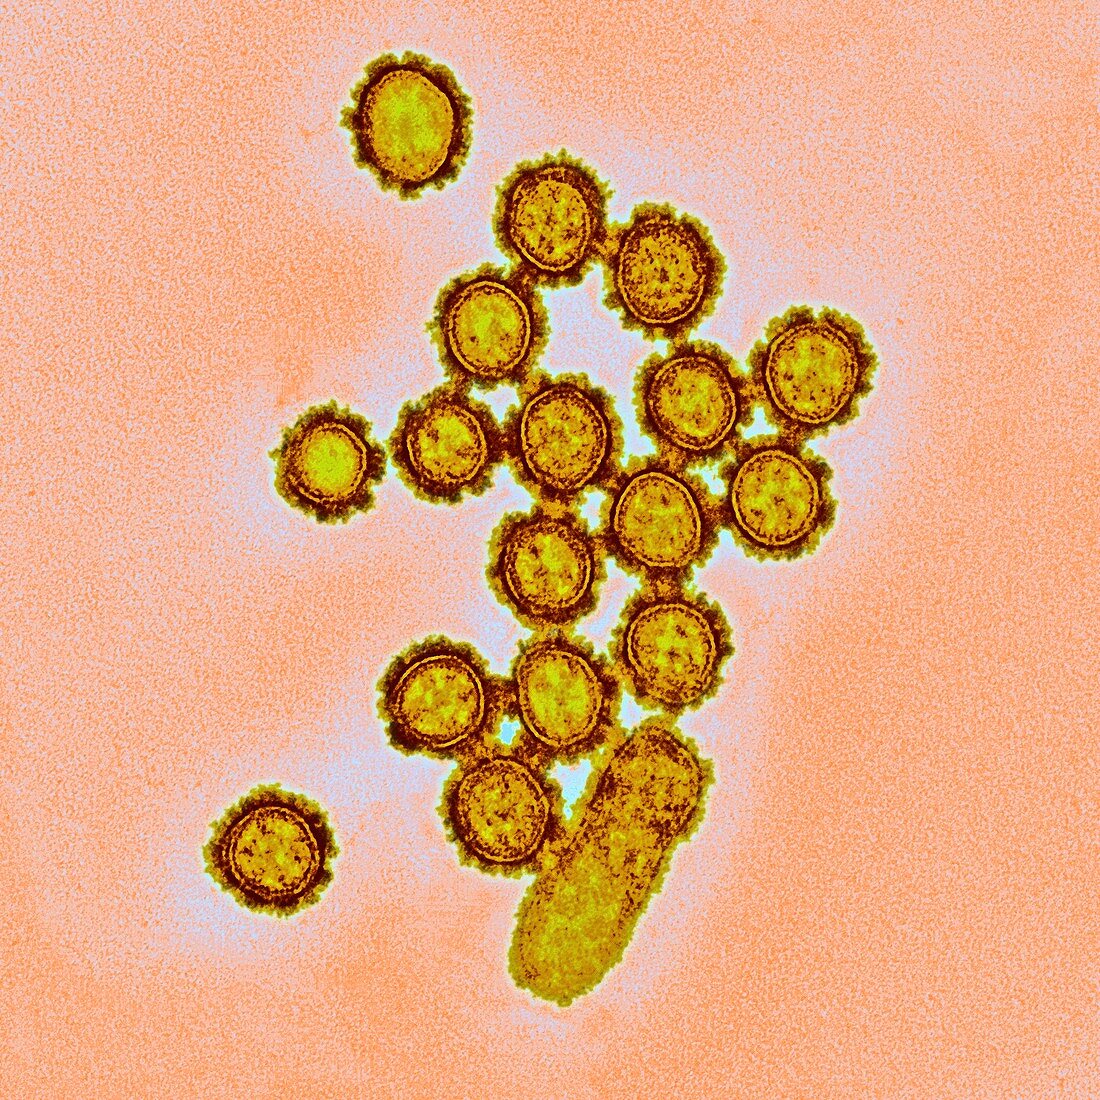 H1N1 flu virus particles,TEM